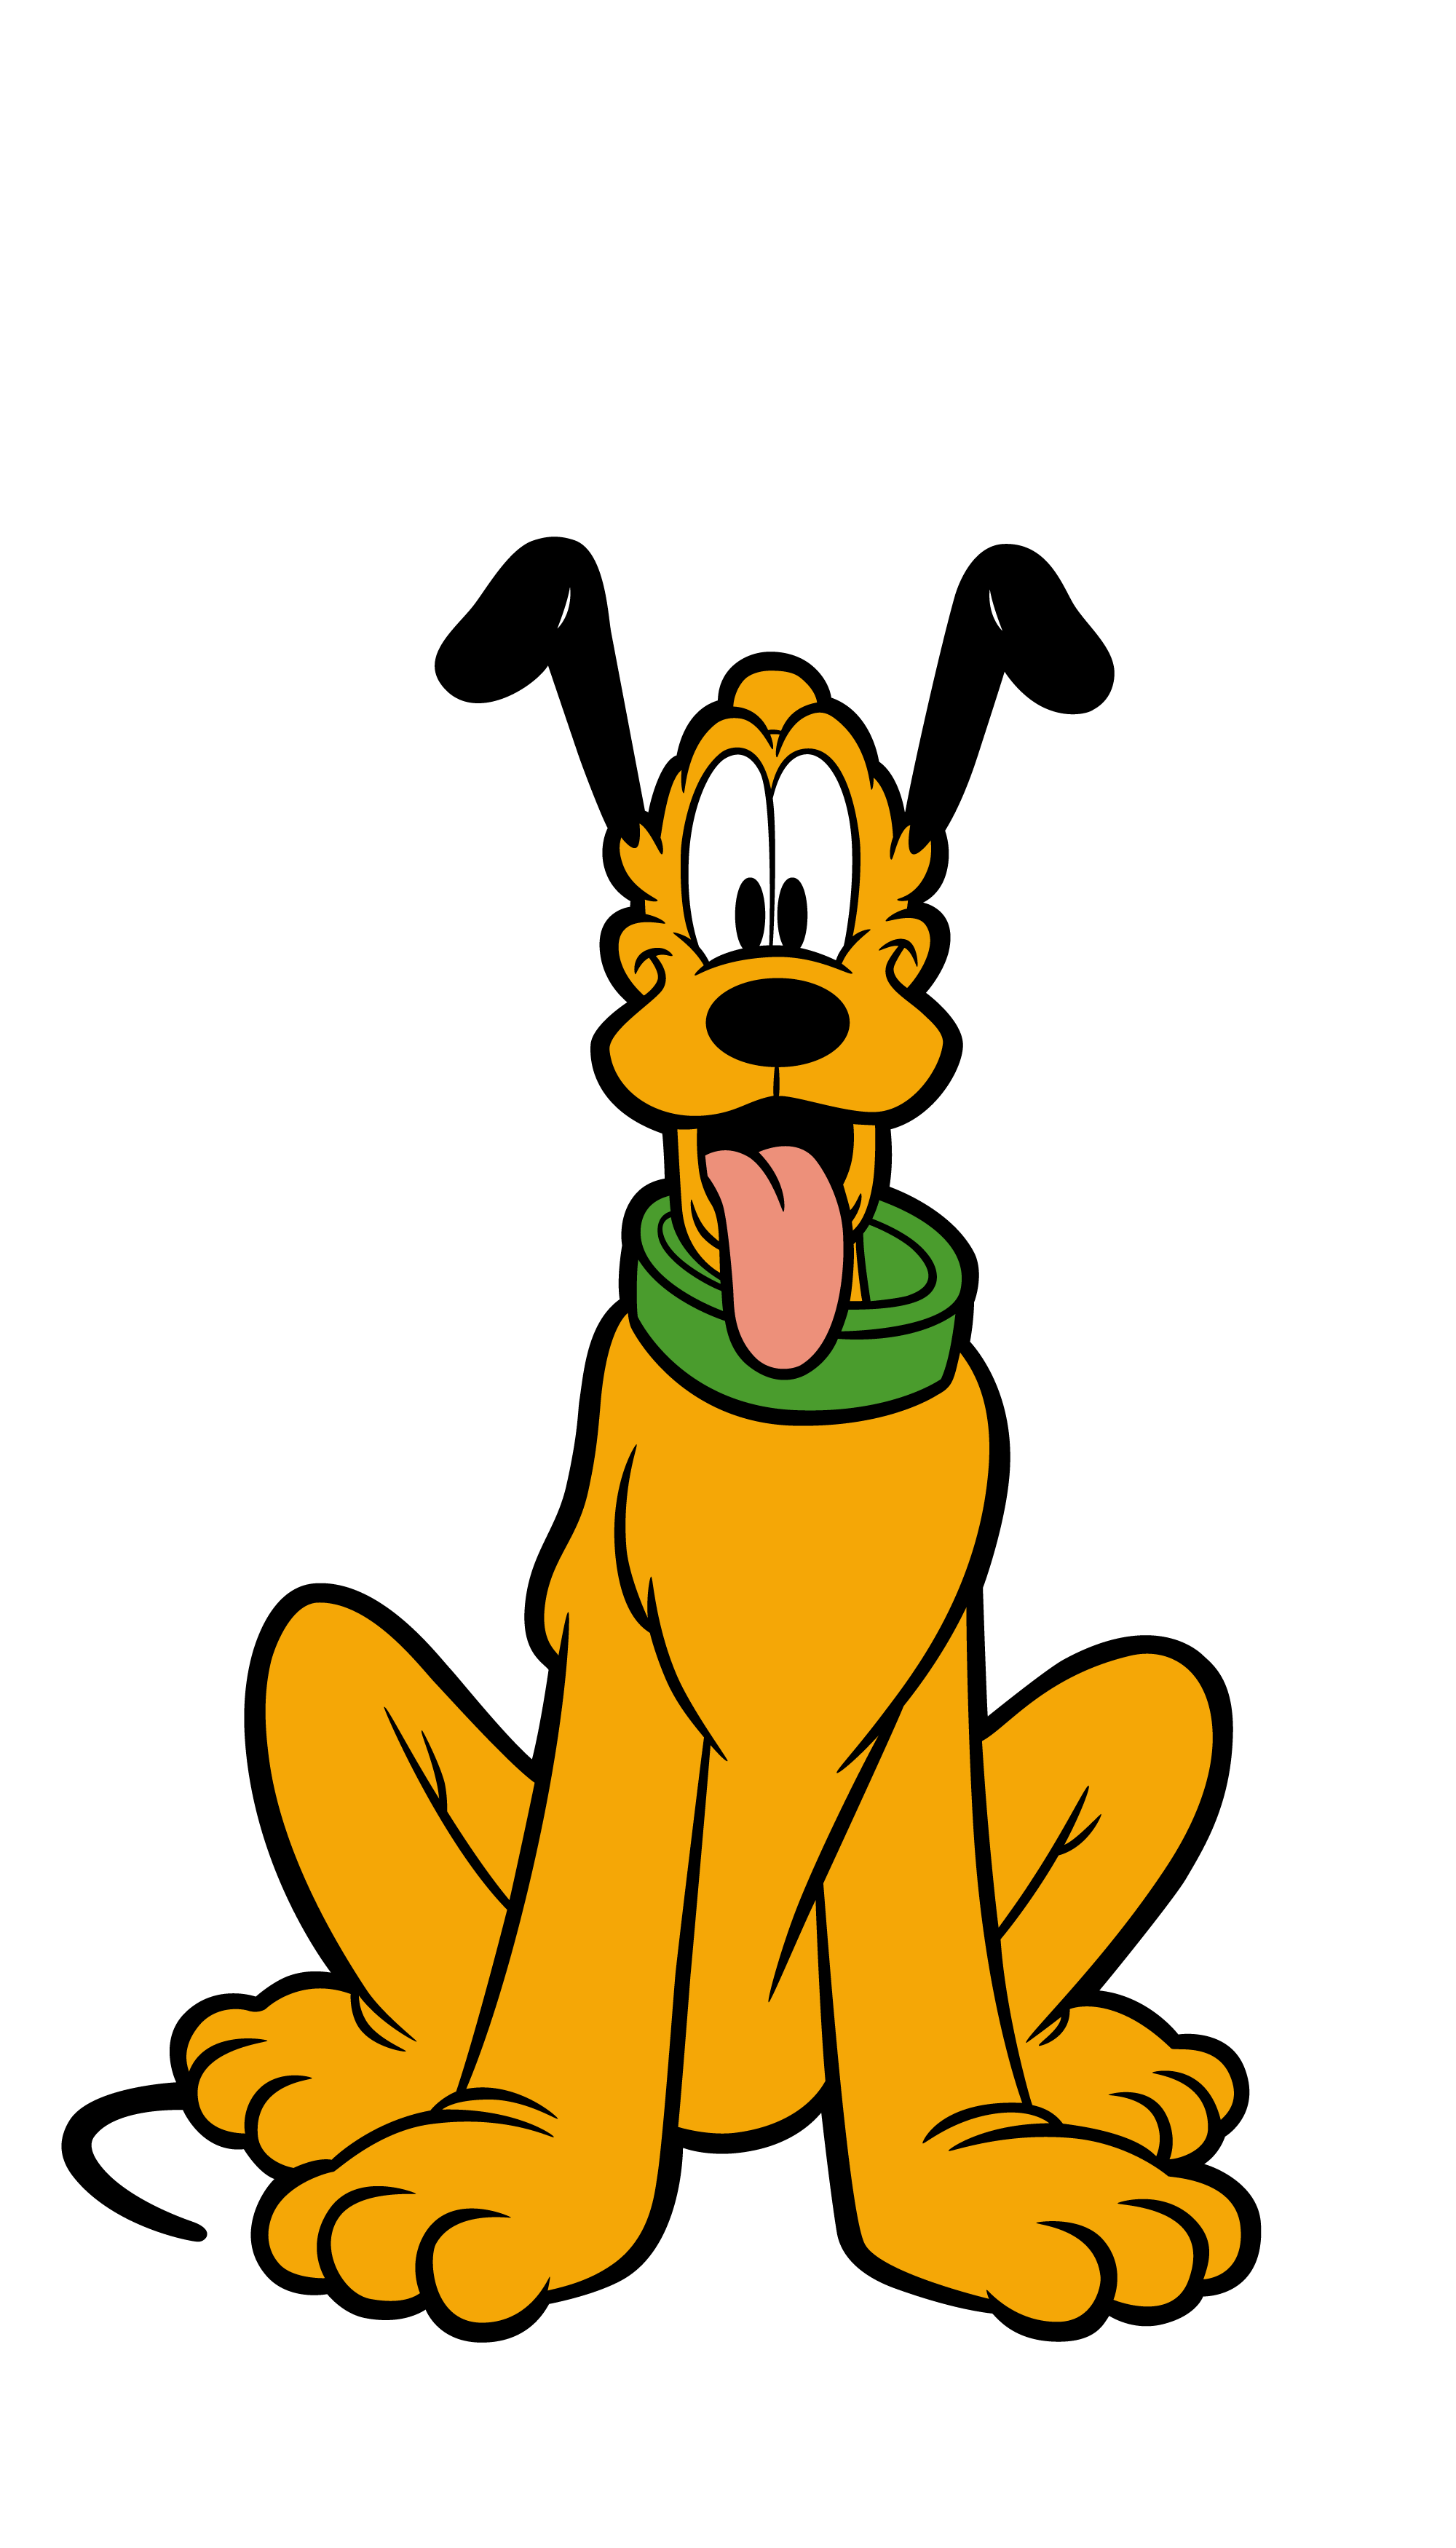 Pluto (978)